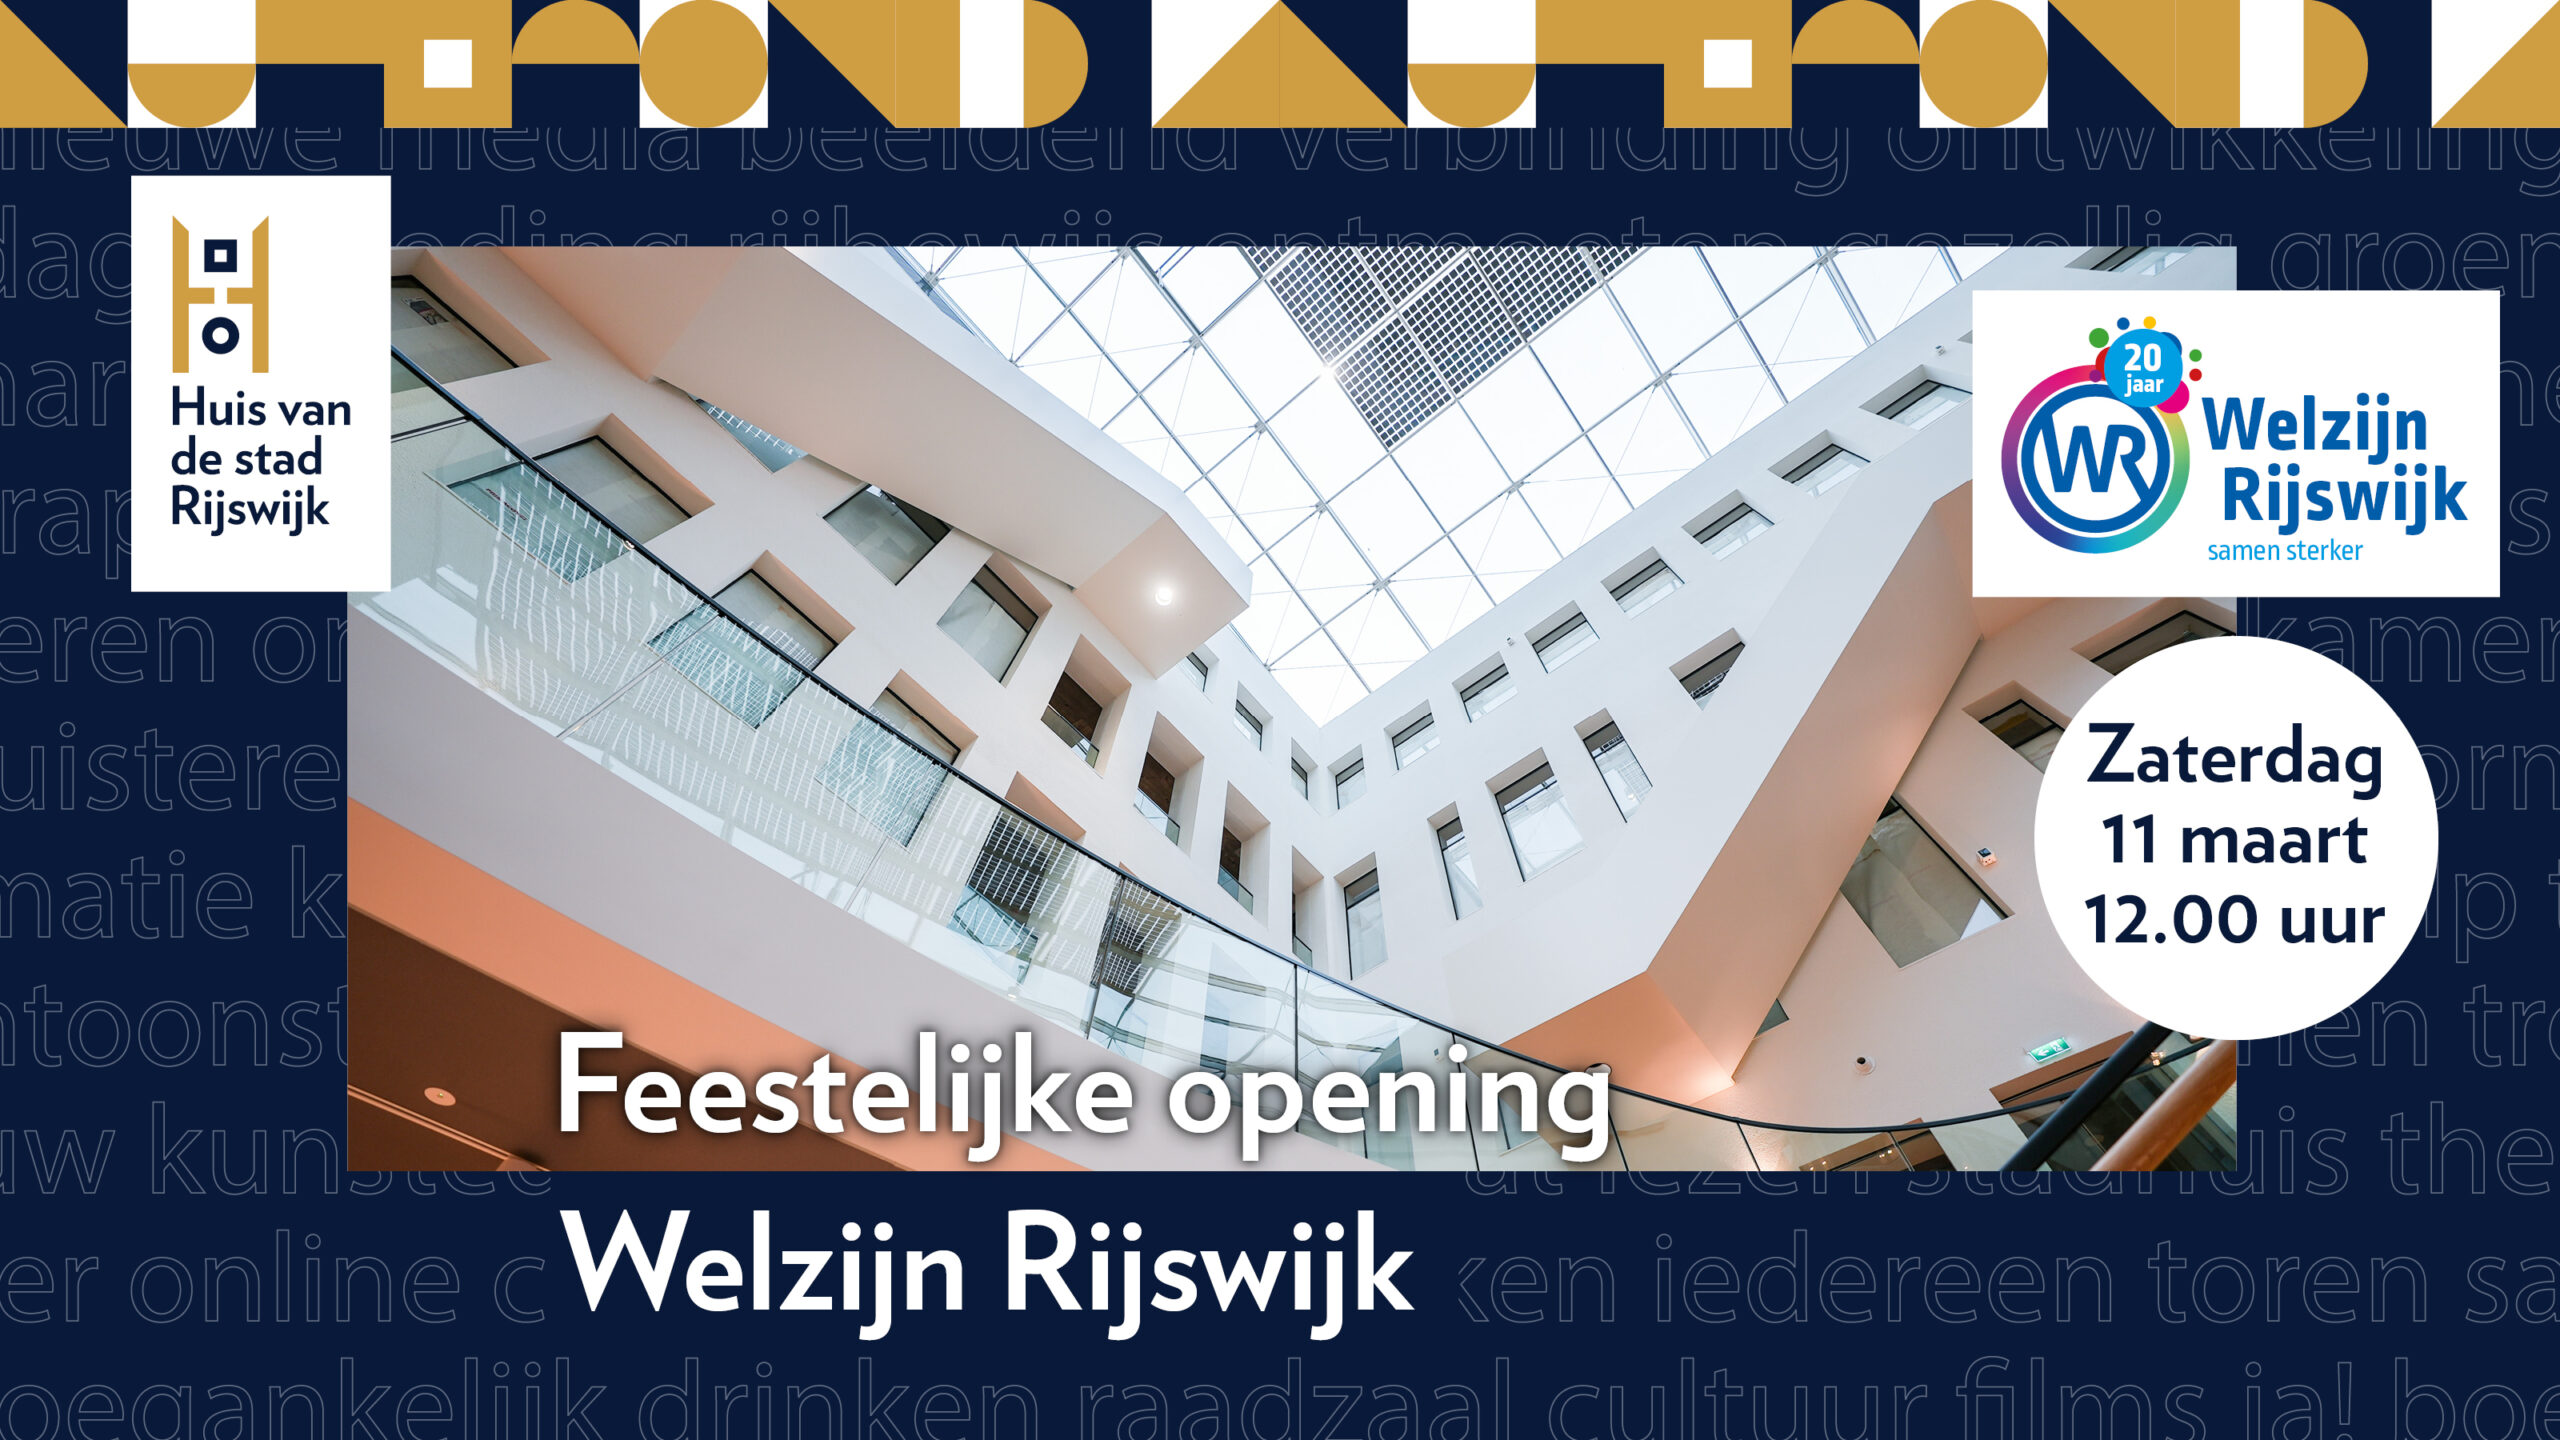 Uitnodiging zaterdag 11 maart feestelijke opening Welzijn Rijswijk